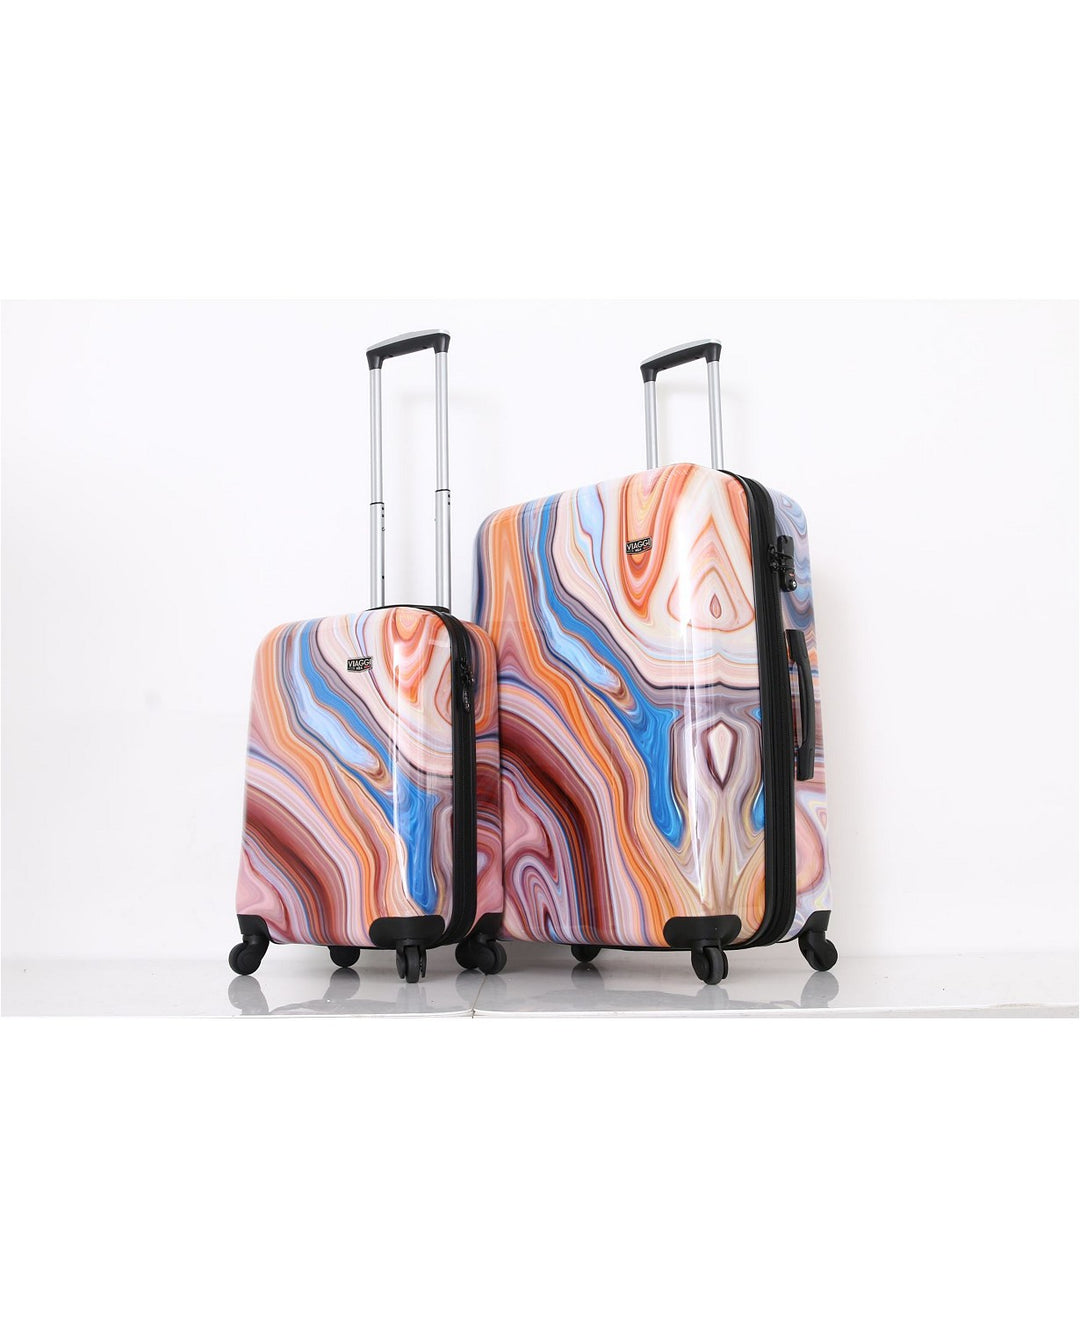 Mia Viaggi Italy 2 Piece Suitcase Set